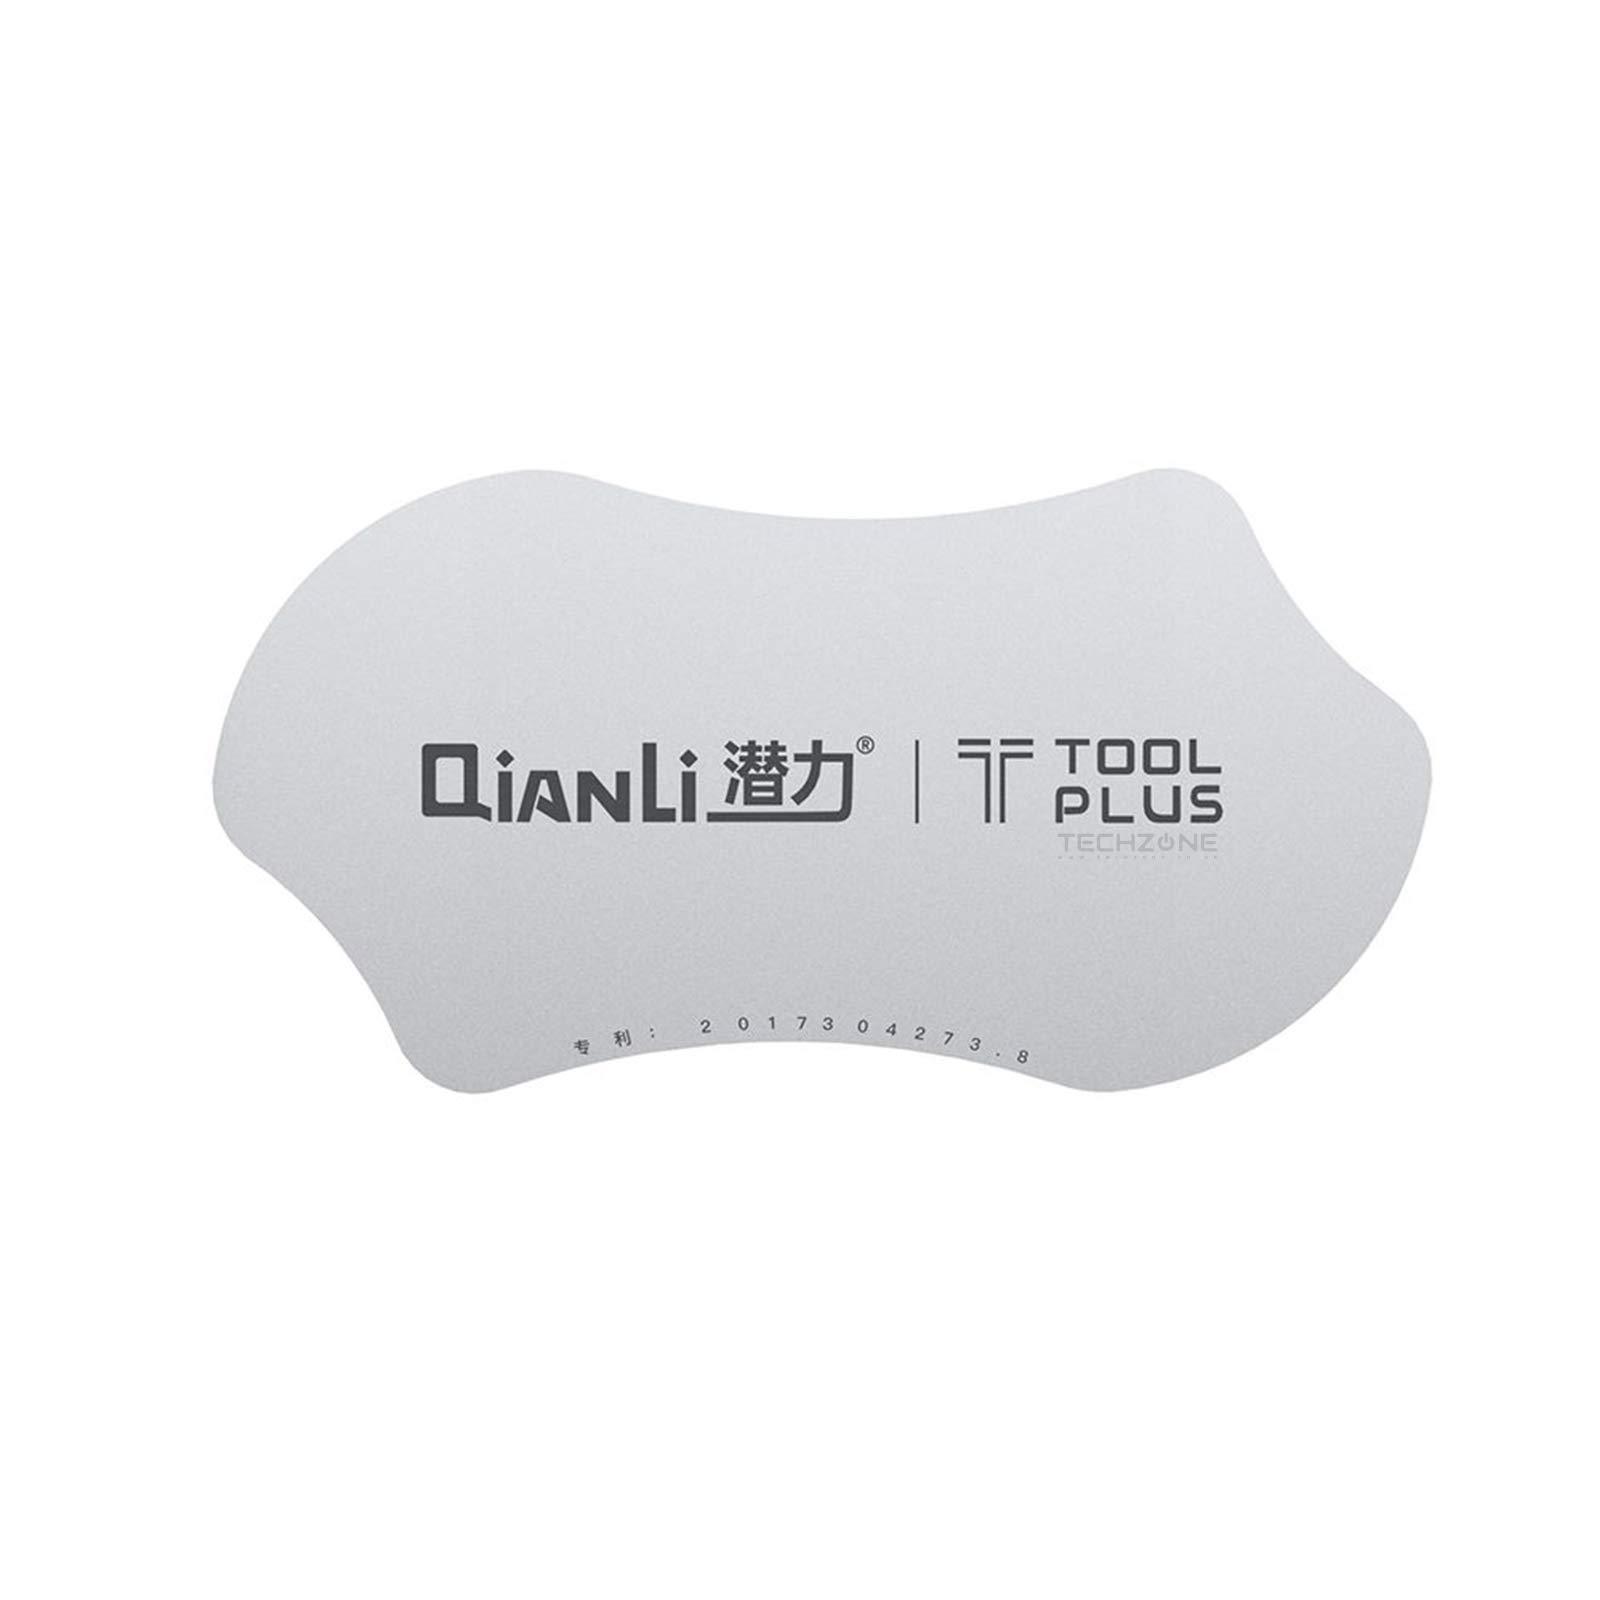 Kovová spona / otvírák pro otvírání mobilního telefonu QianLi